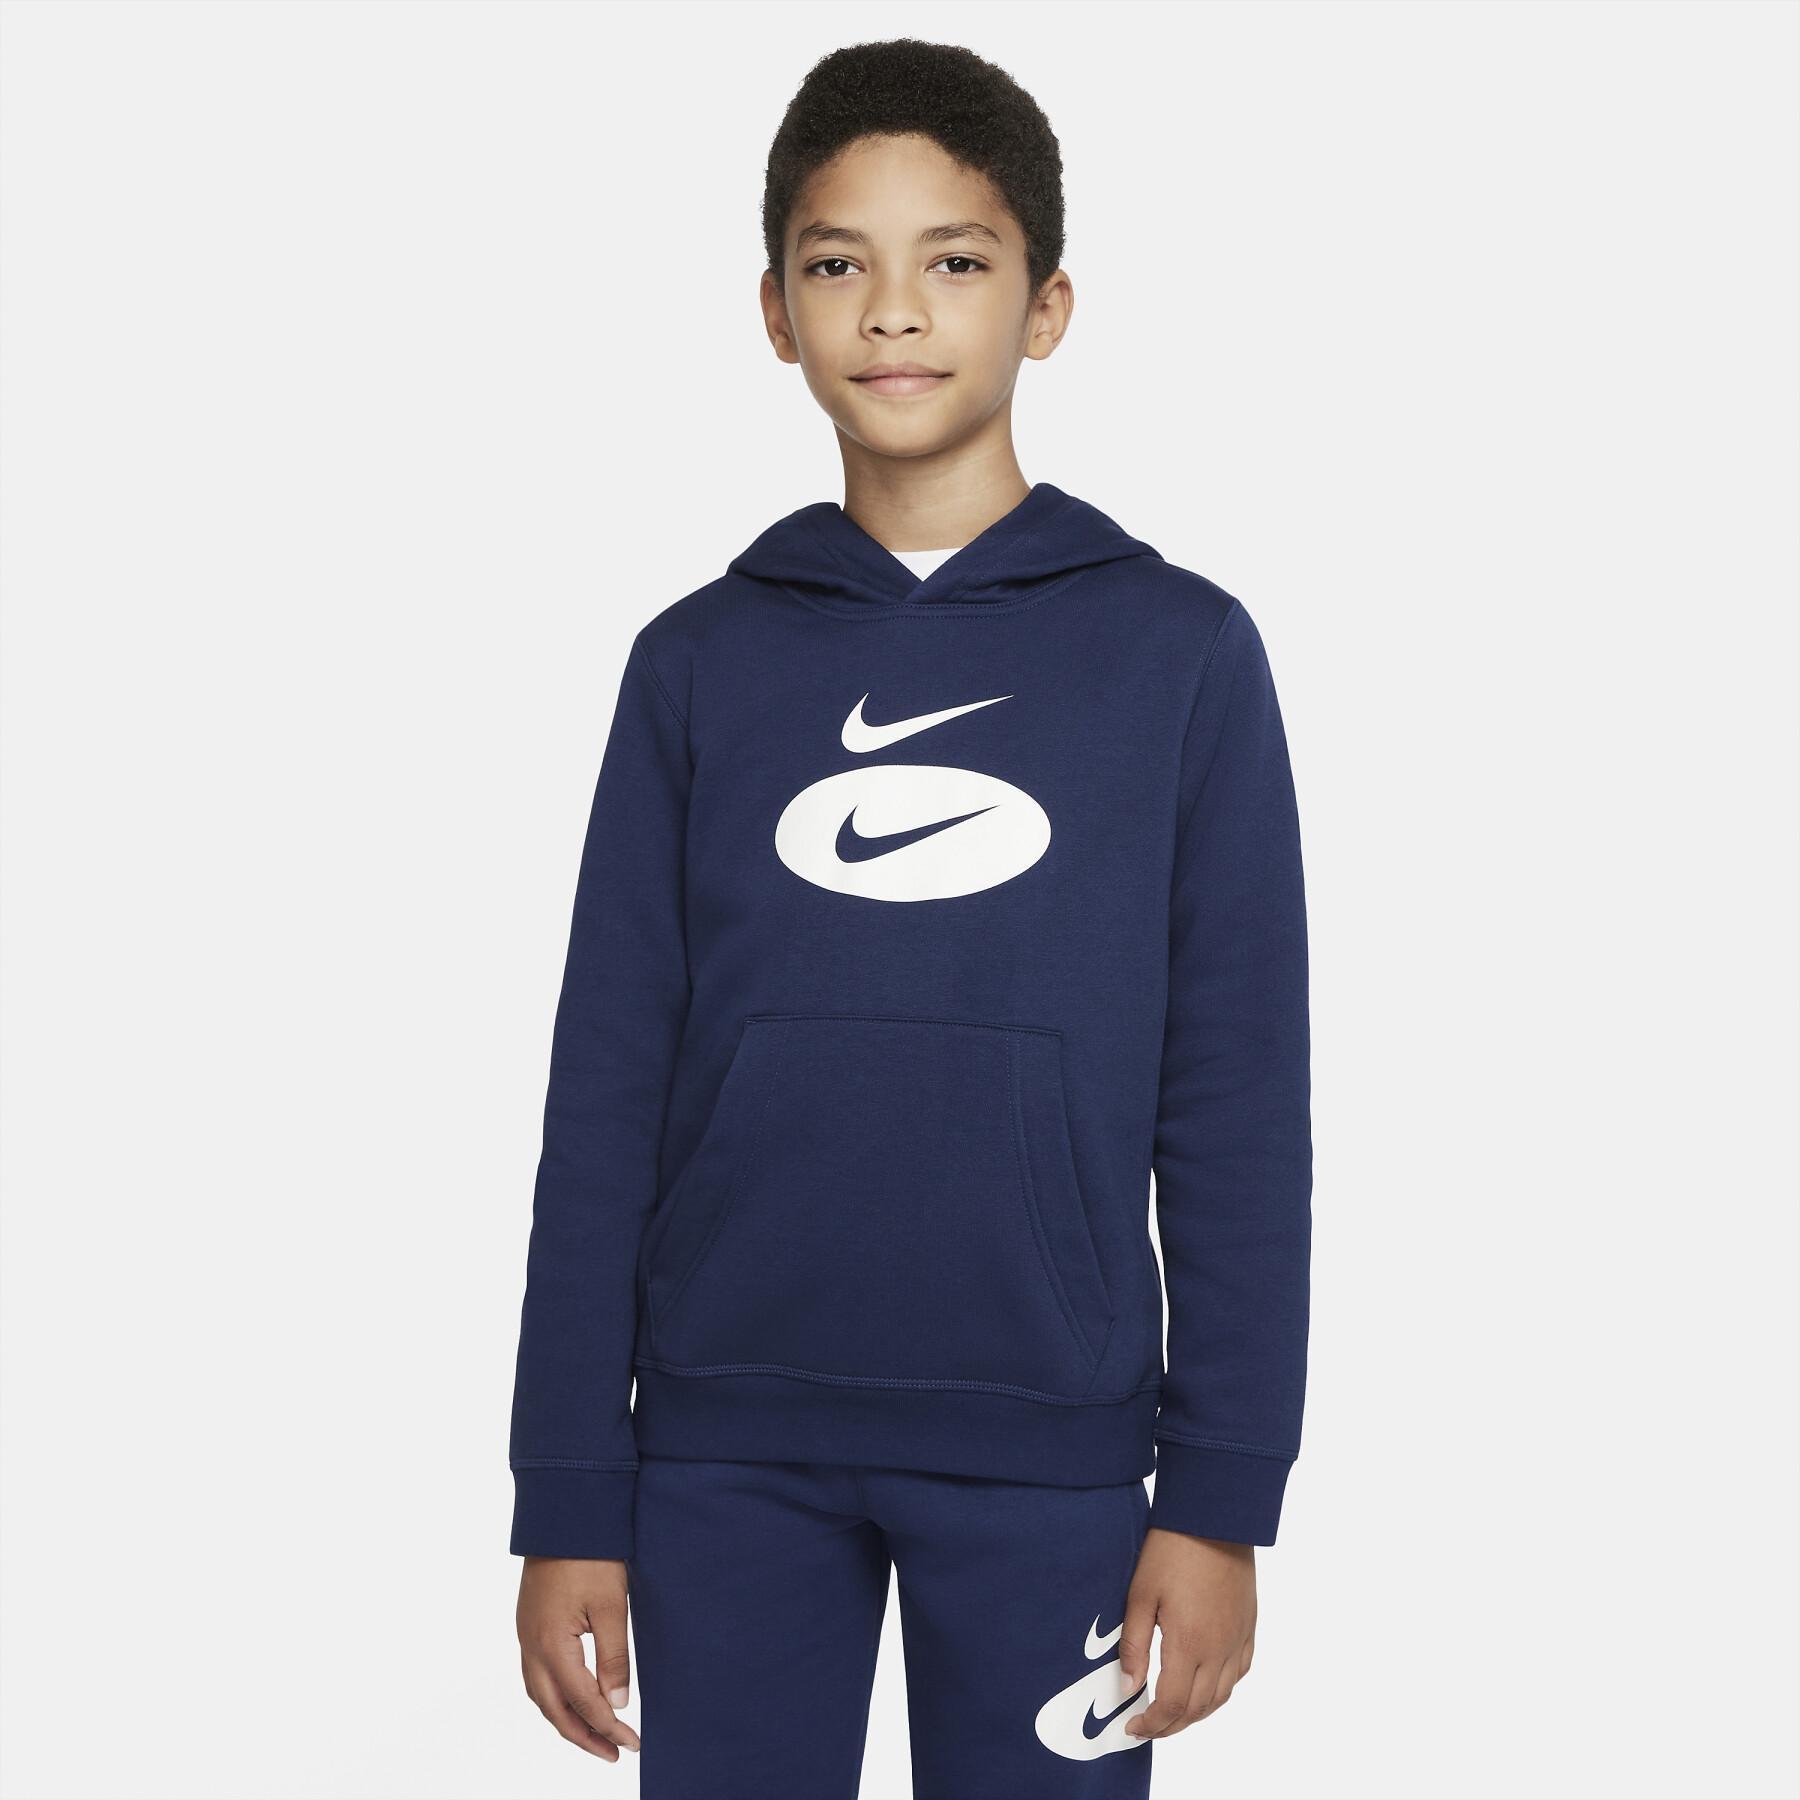 Camisola para crianças Nike Core